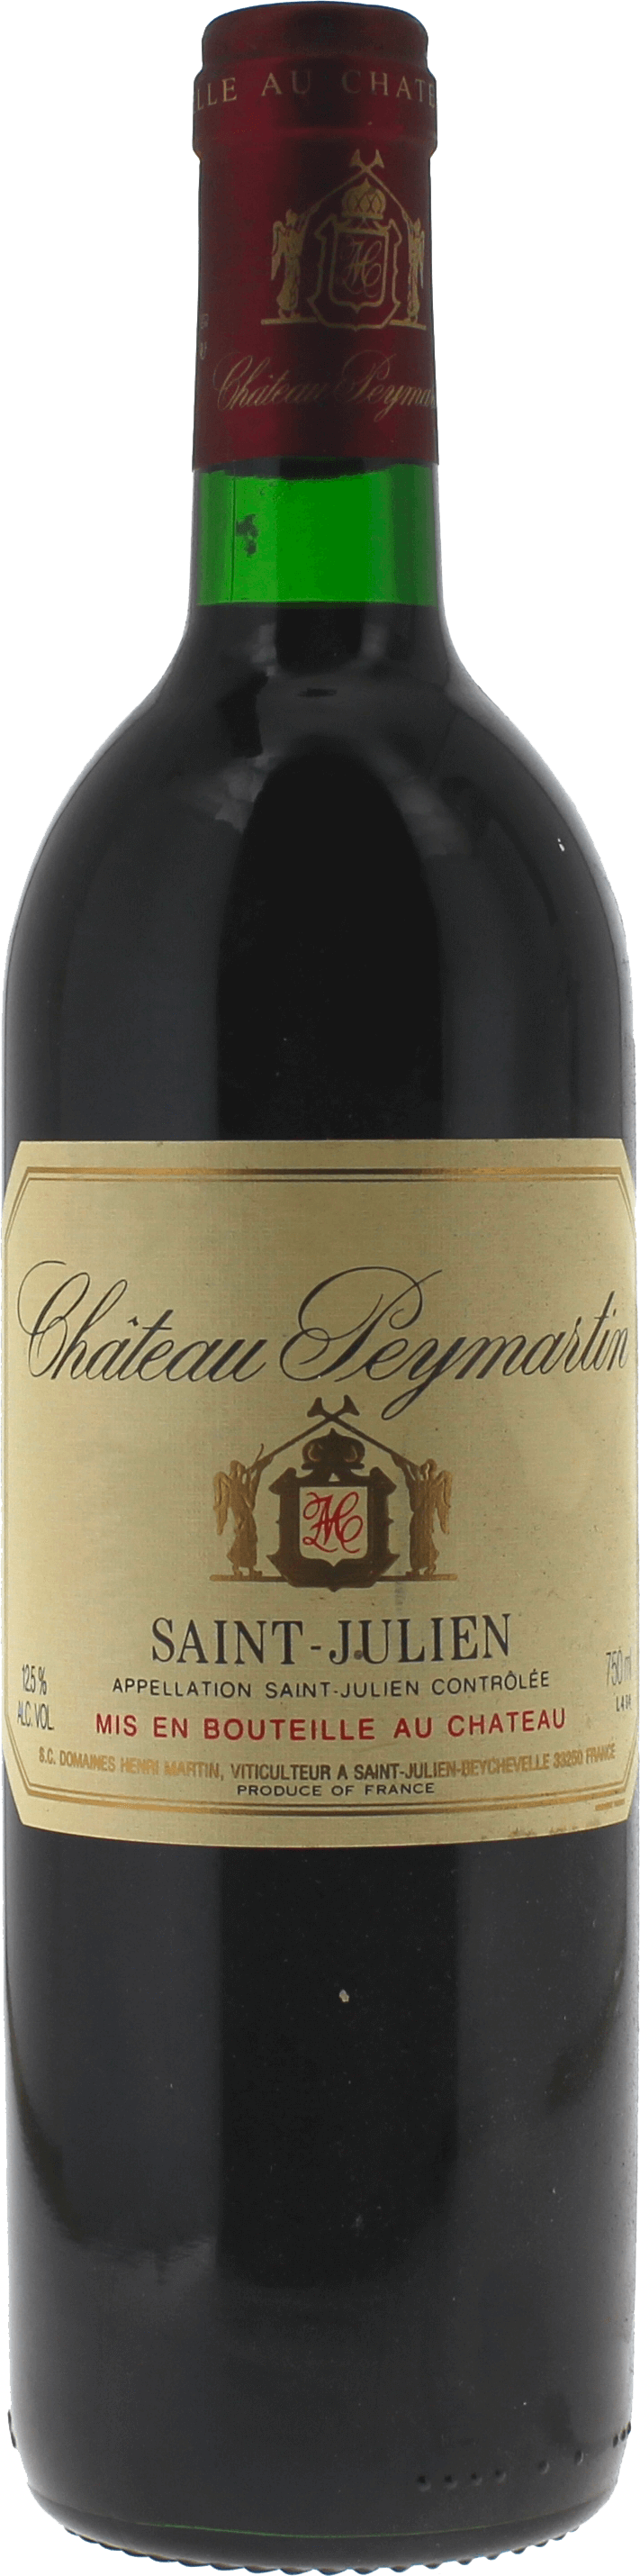 Peymartin 1996  Saint-Julien, Bordeaux rouge